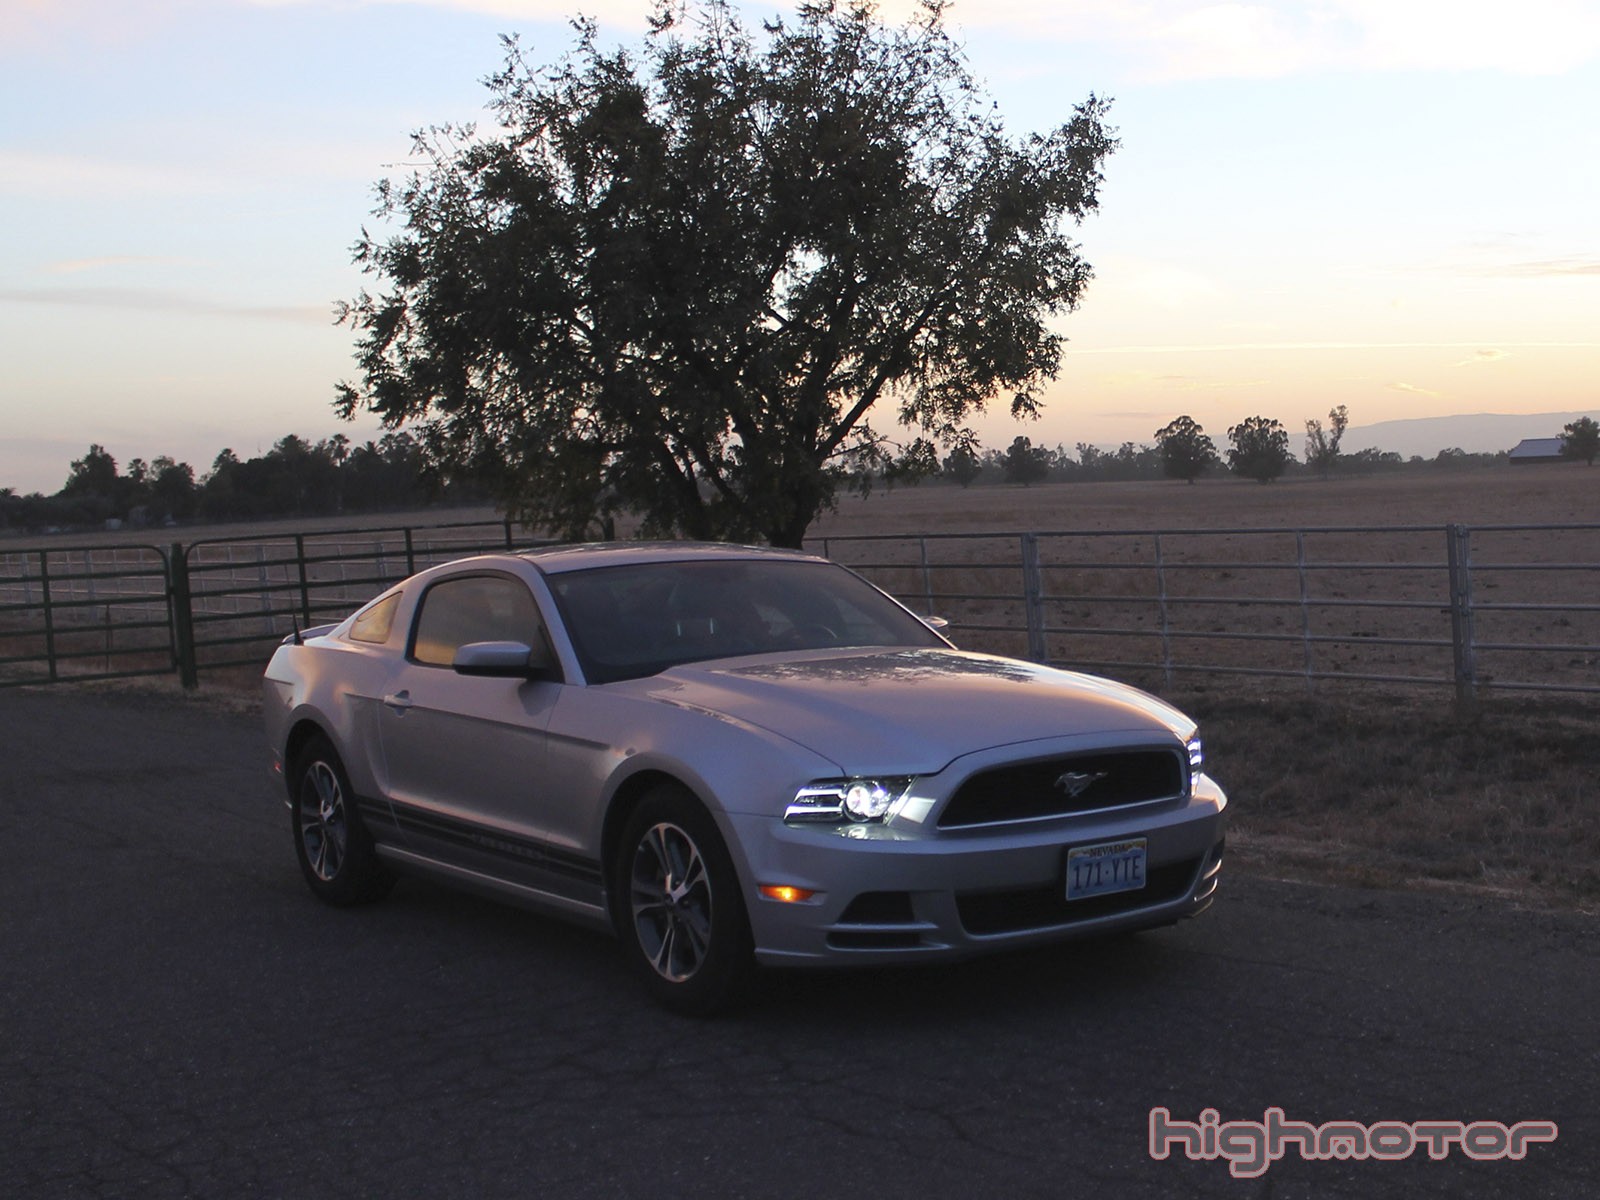 Ford Mustang, prueba (Motor, prestaciones, comportamiento y consumo)